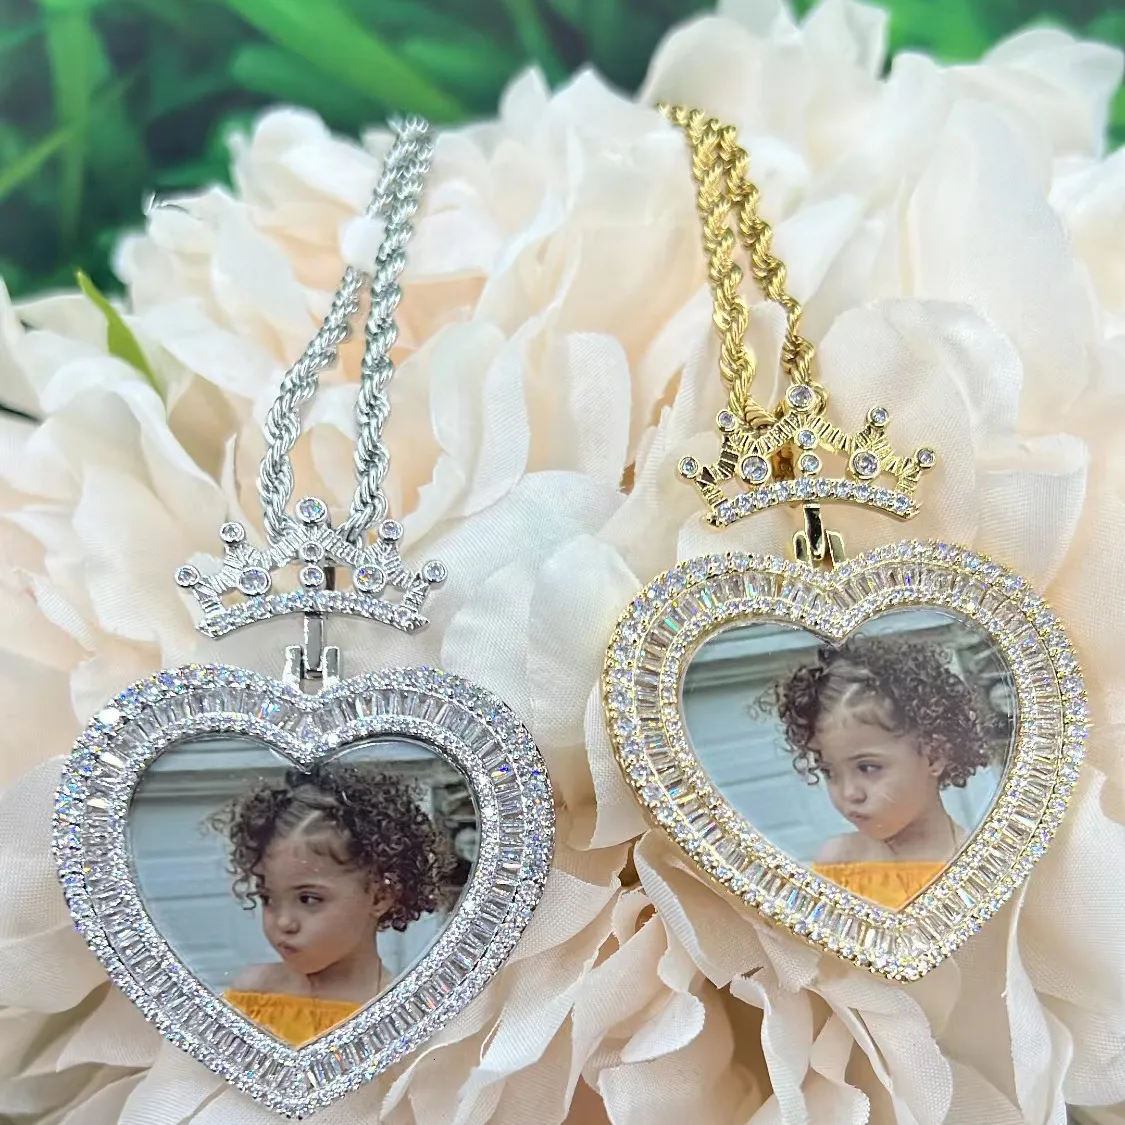 قلادات قلادة The Bling King Heart Princess Po Pendant Memory Picture Pendant Name Name Hiphop Jewelery Gifts 230908